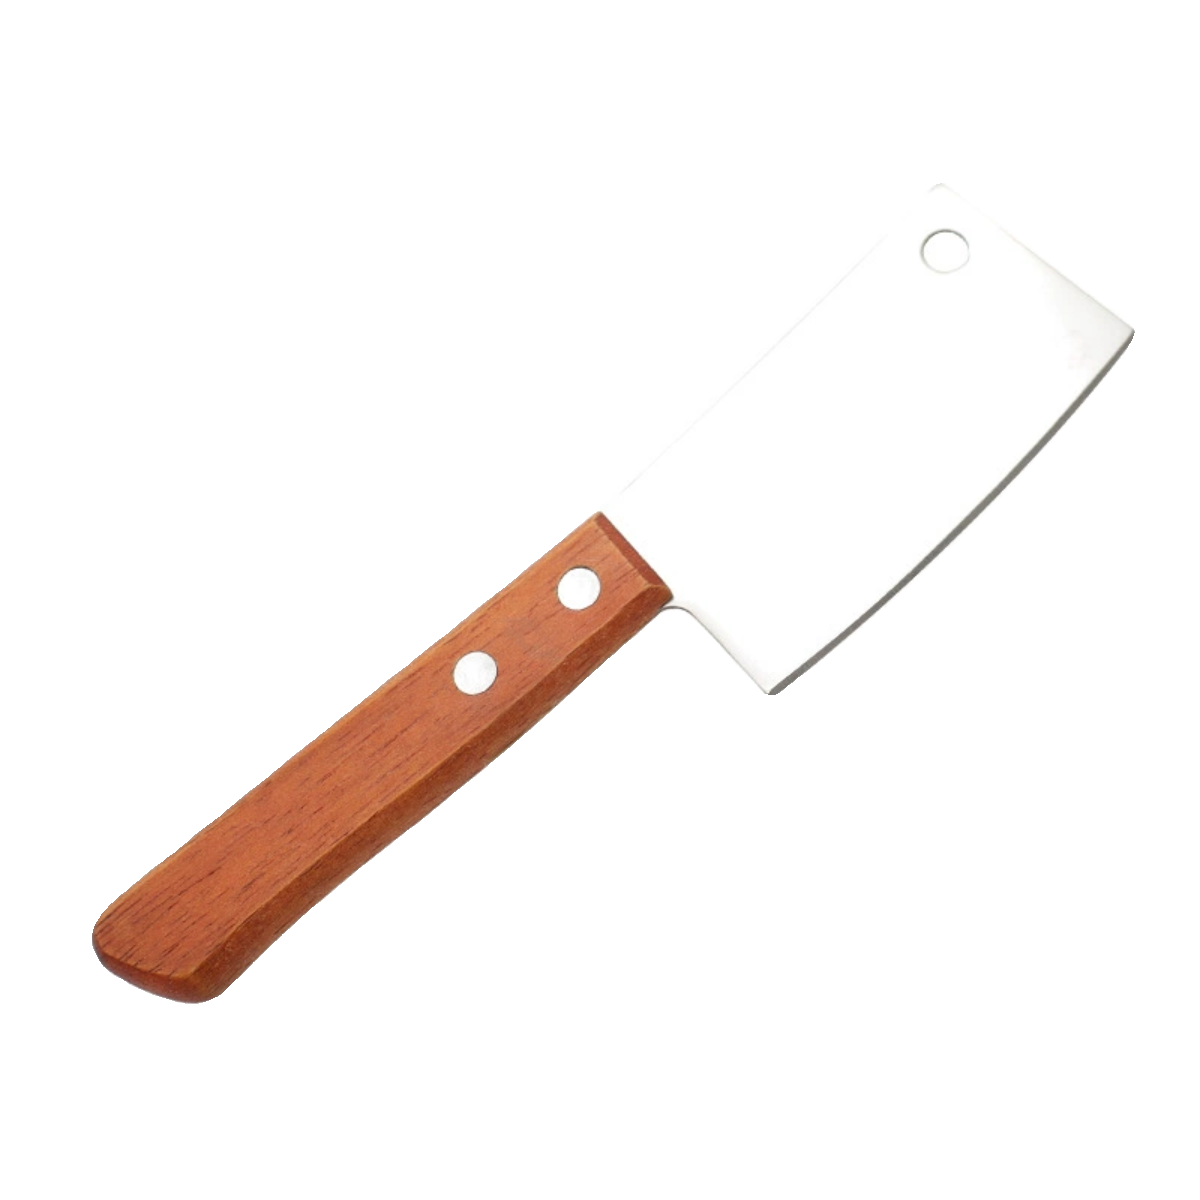 新疆包邮迷你便携小切菜刀家用厨房户外烧烤烘焙水果芝士切片刀具 - 图3